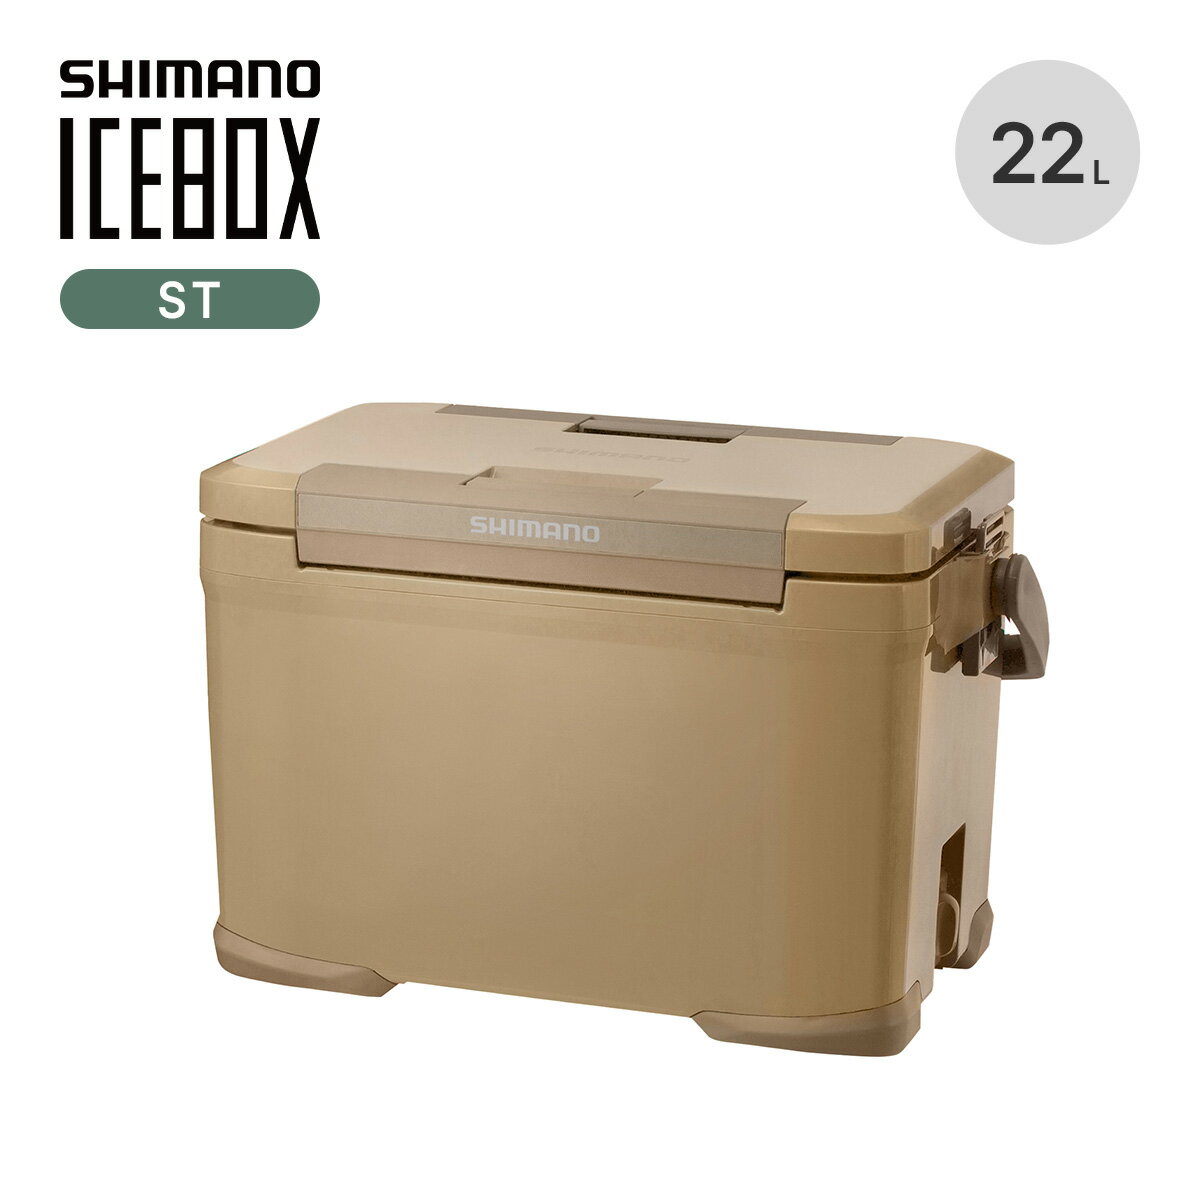 シマノ アイスボックスST 22L SHIMANO ICEBOX ST NX-322V ハードクーラー クーラーボックス アイスボックス 両開き 保冷 発泡ウレタン 抗菌 日本製 釣り BBQ バーベキュー キャンプ アウトドア 